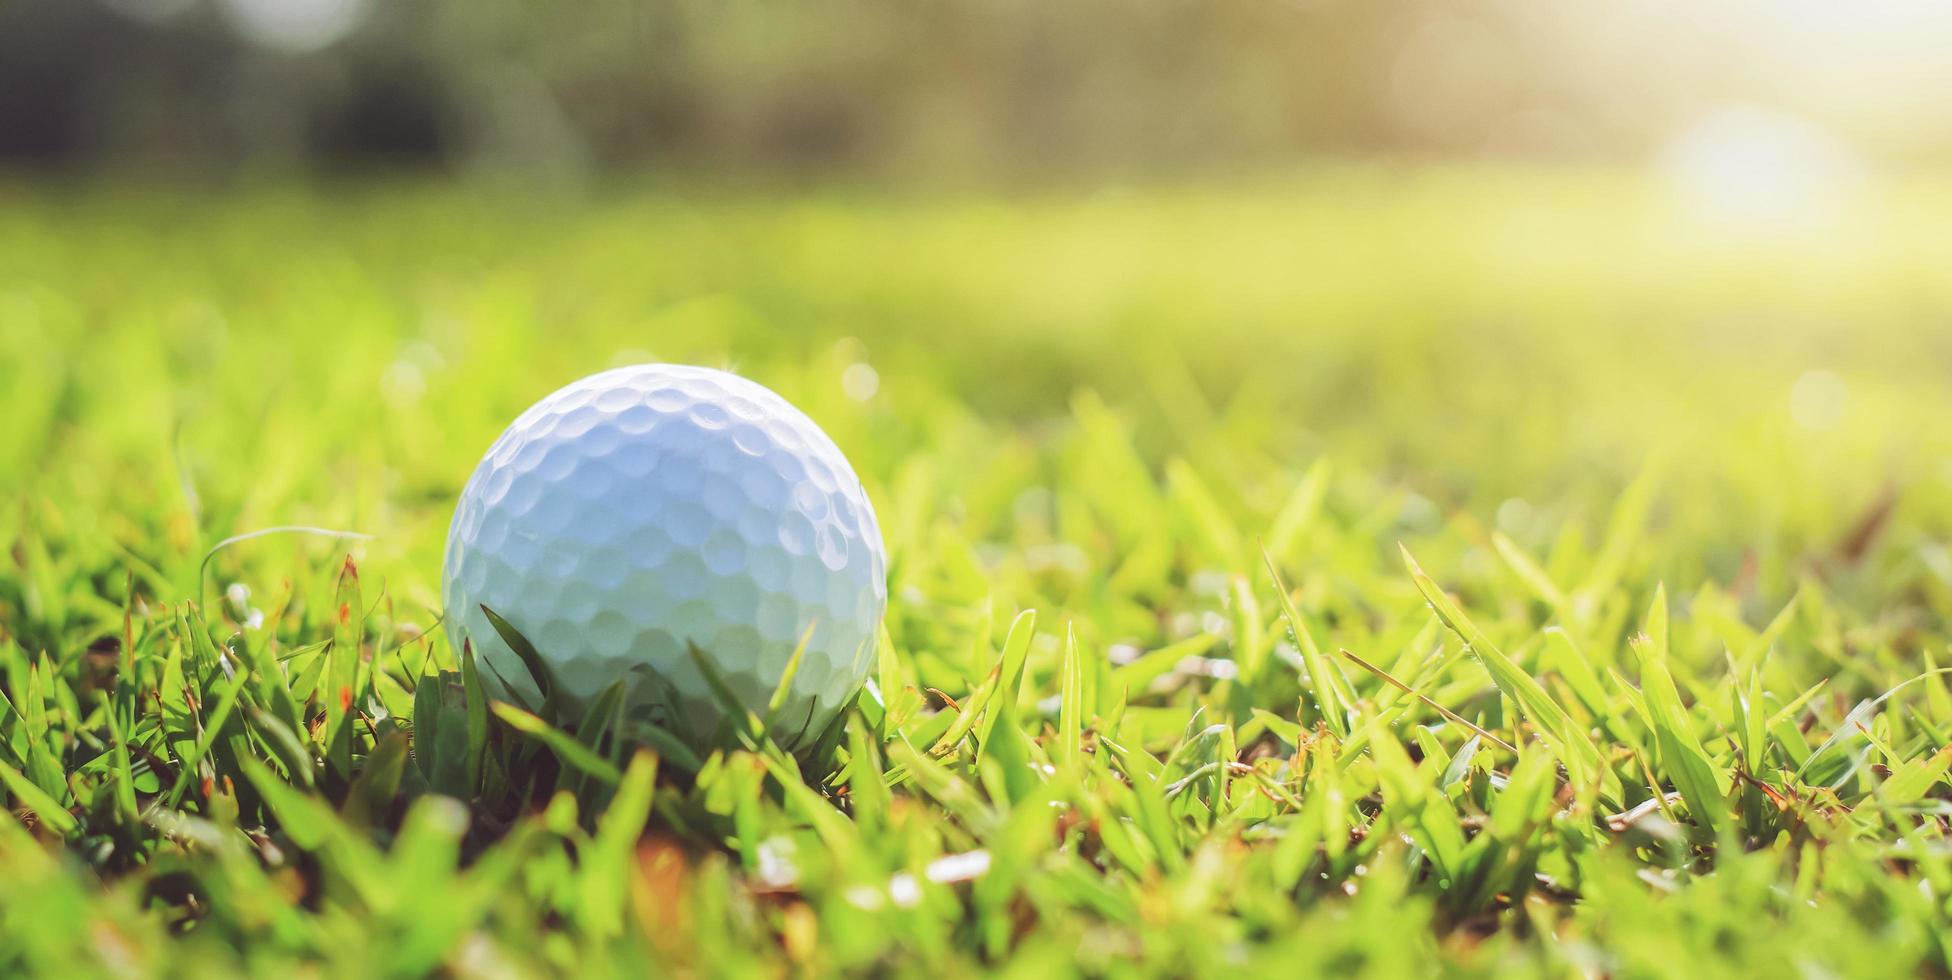 pelota de golf sobre hierba verde con luz solar foto